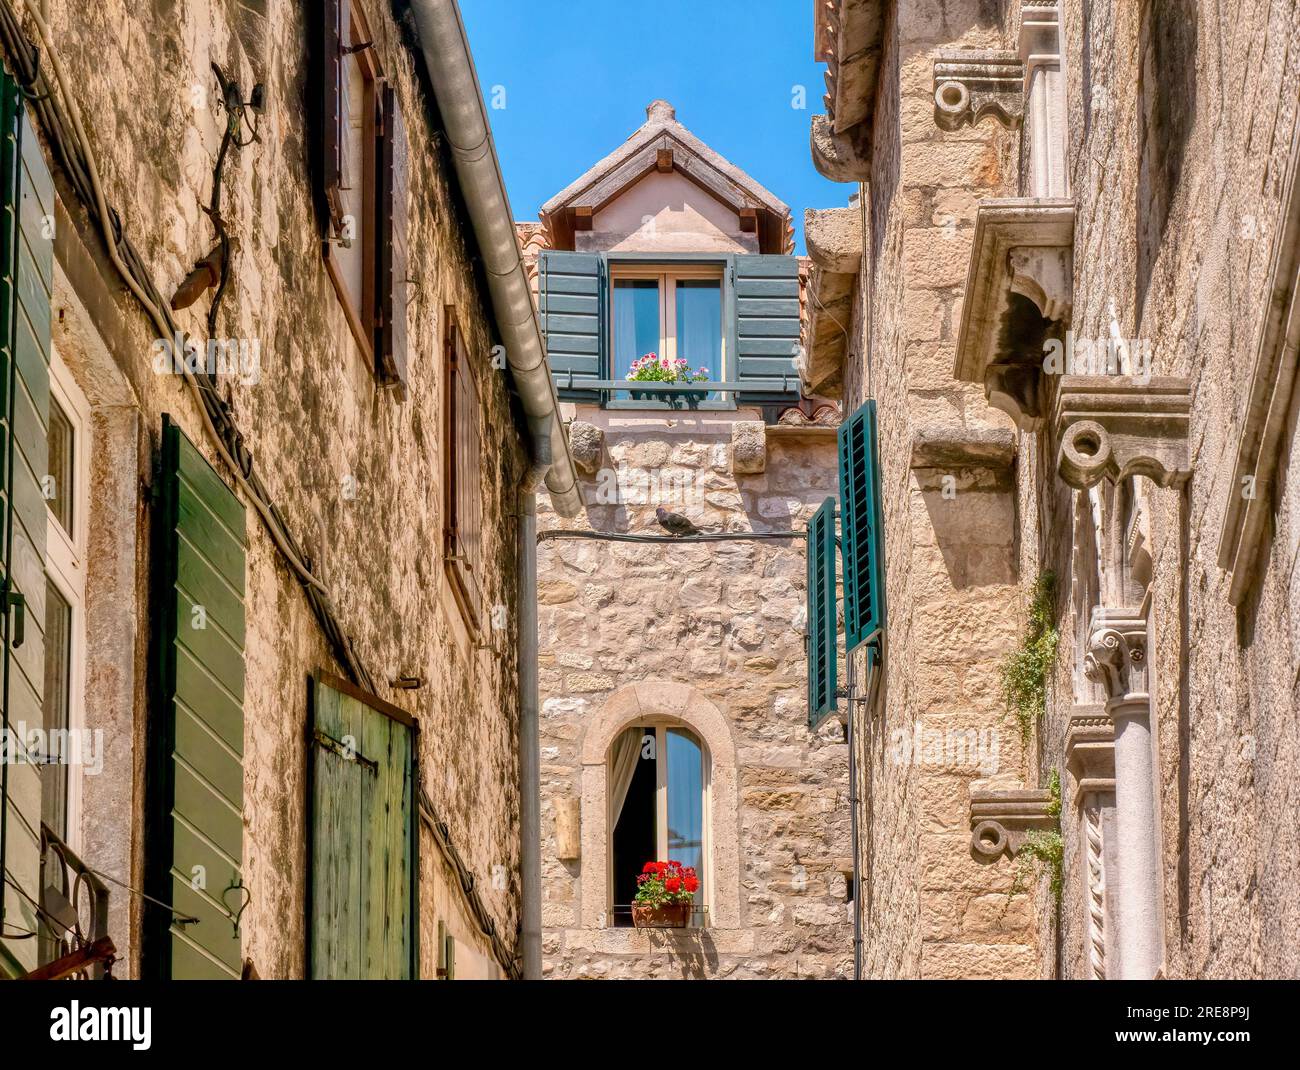 Étages supérieurs de bâtiments résidentiels médiévaux en pierre, avec fenêtres pittoresques à volets et jardinières, dans une ruelle étroite, à Split, Croatie. Banque D'Images